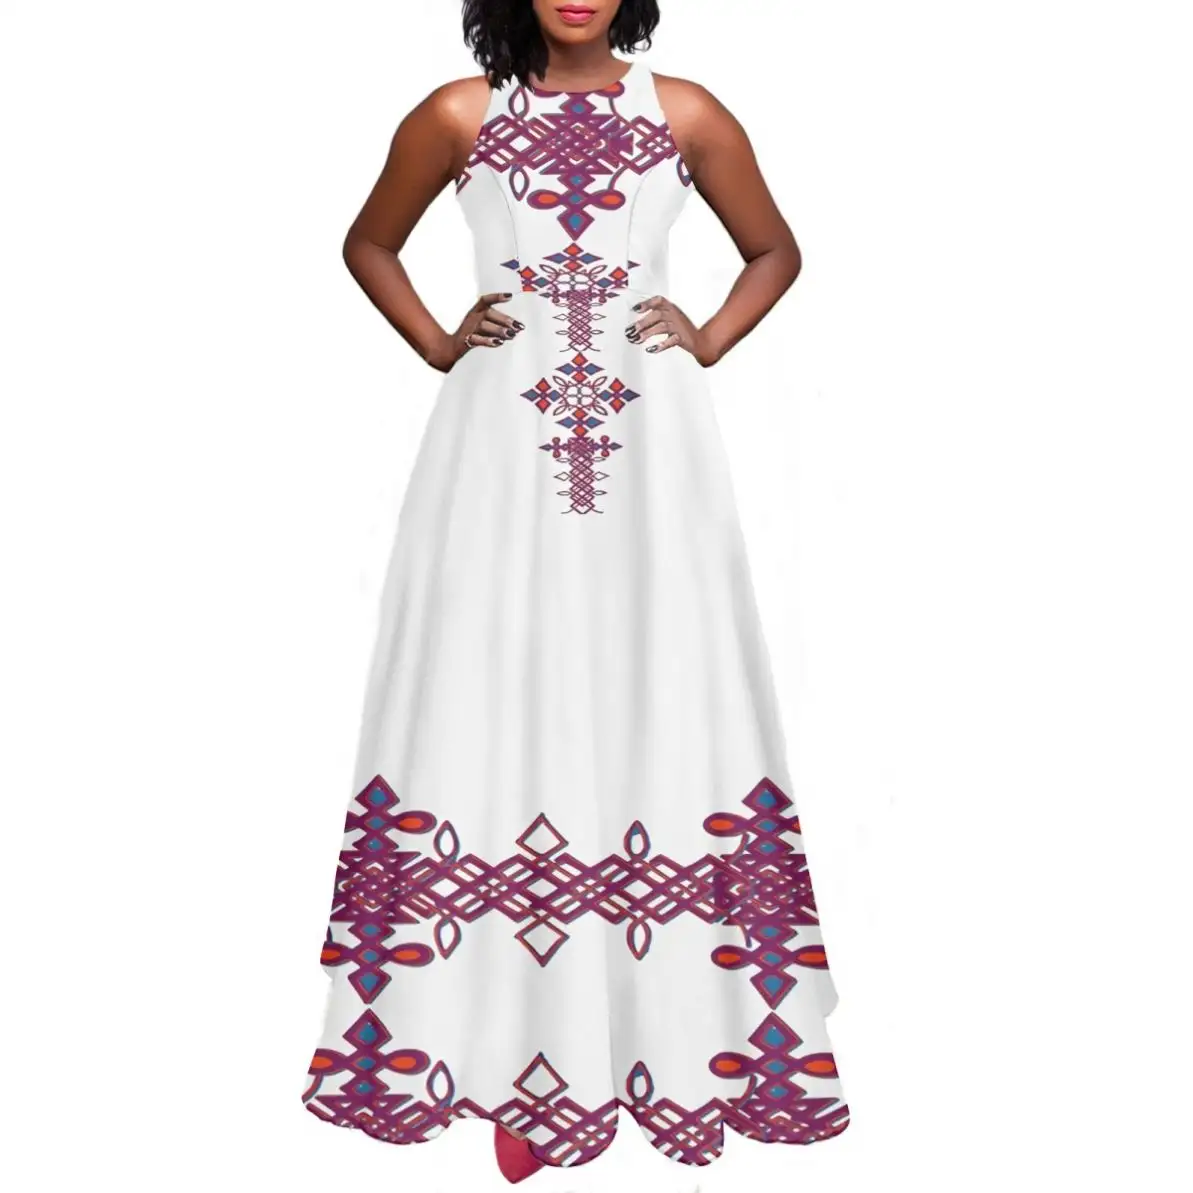 فستان تقليدي إثيوبي مخصص من مصنع المعدات الأصلي وصانع التصميمات الأصلية فستان صيفي للبيع بالجملة بدون أكمام وبرقبة على شكل حرف O فستان سهرة كاجوال طويل للنساء